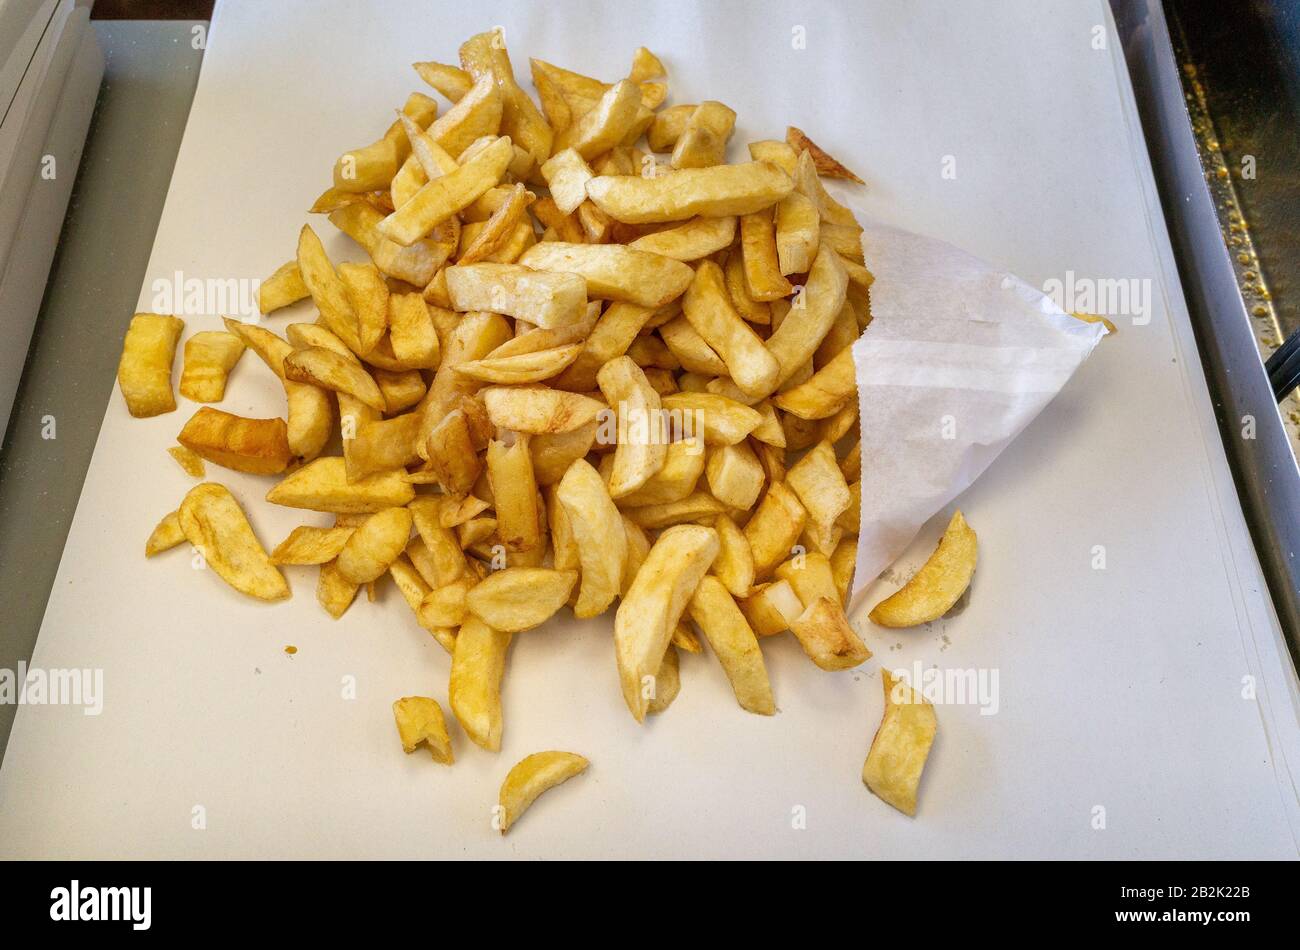 Portion de chips au Fish and Chip shop, Royaume-Uni Banque D'Images